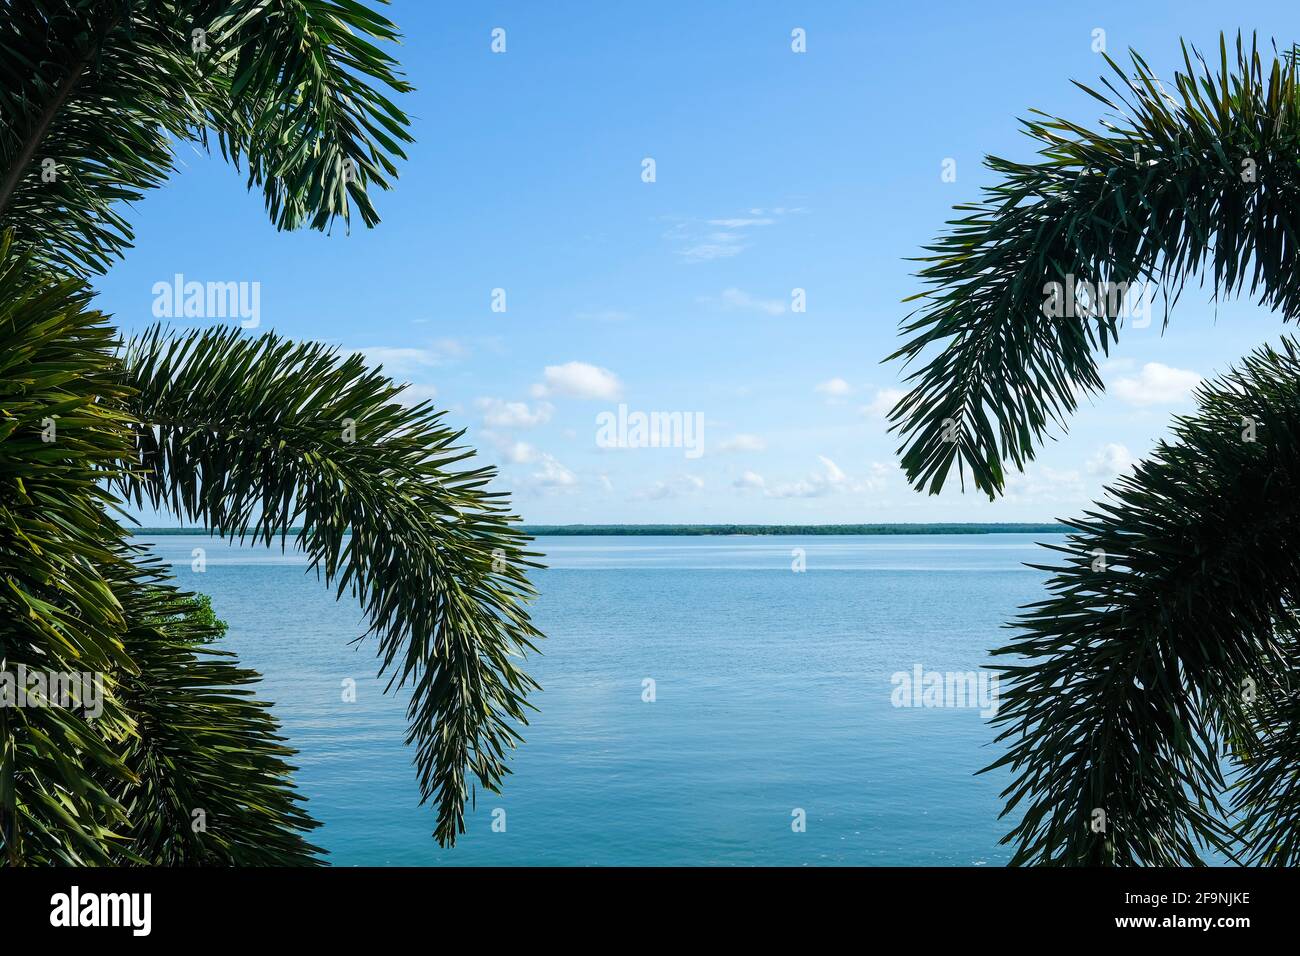 Vista mare e isola attraverso palme da un albero di palme, concetto tropicale Foto Stock